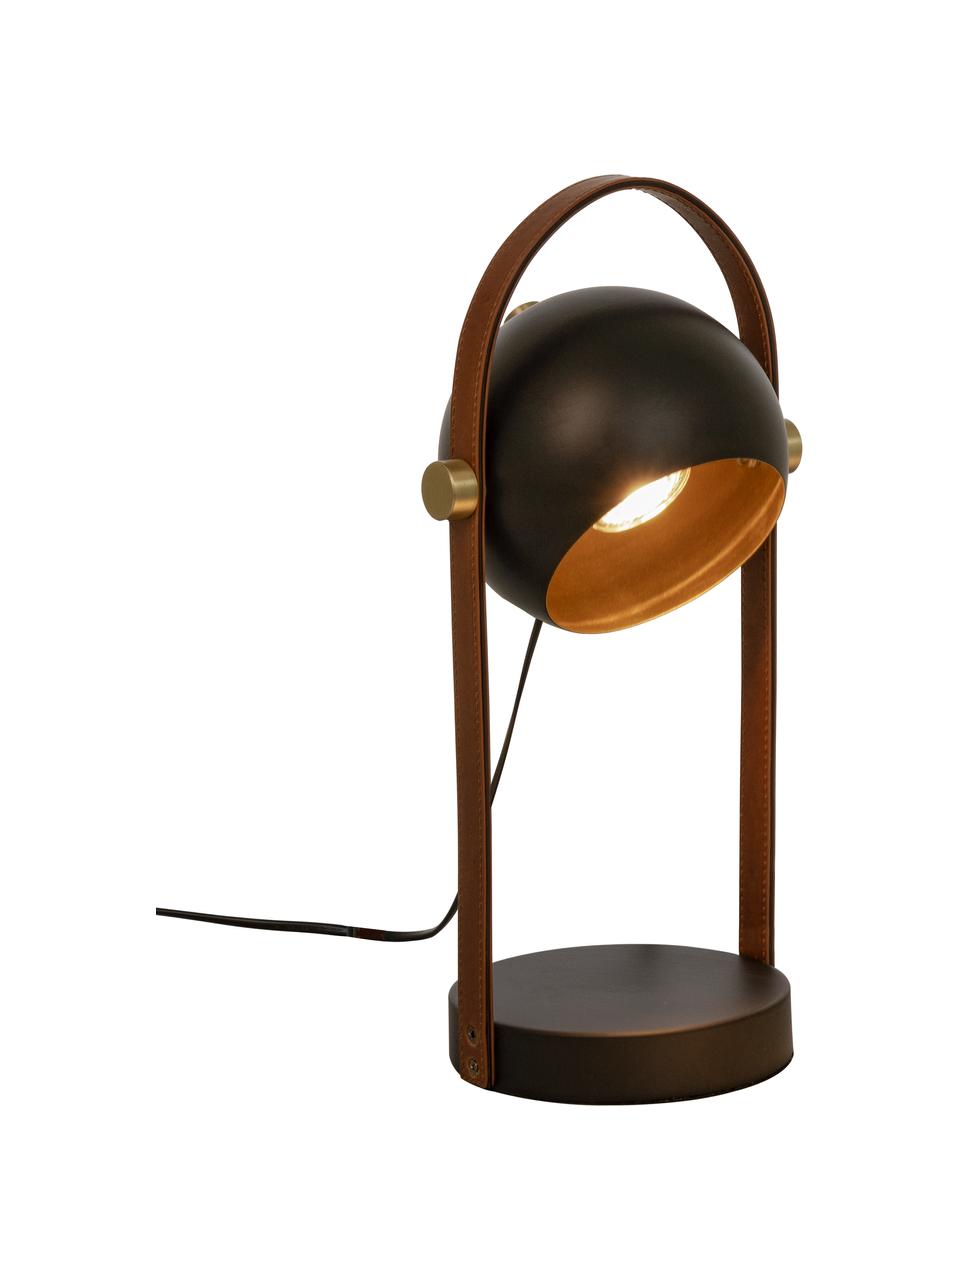 Tafellamp Bow met leren decoratie, Lampenkap: gecoat metaal, Lampvoet: gecoat metaal, Bruin, zwart, B 15 x H 38 cm